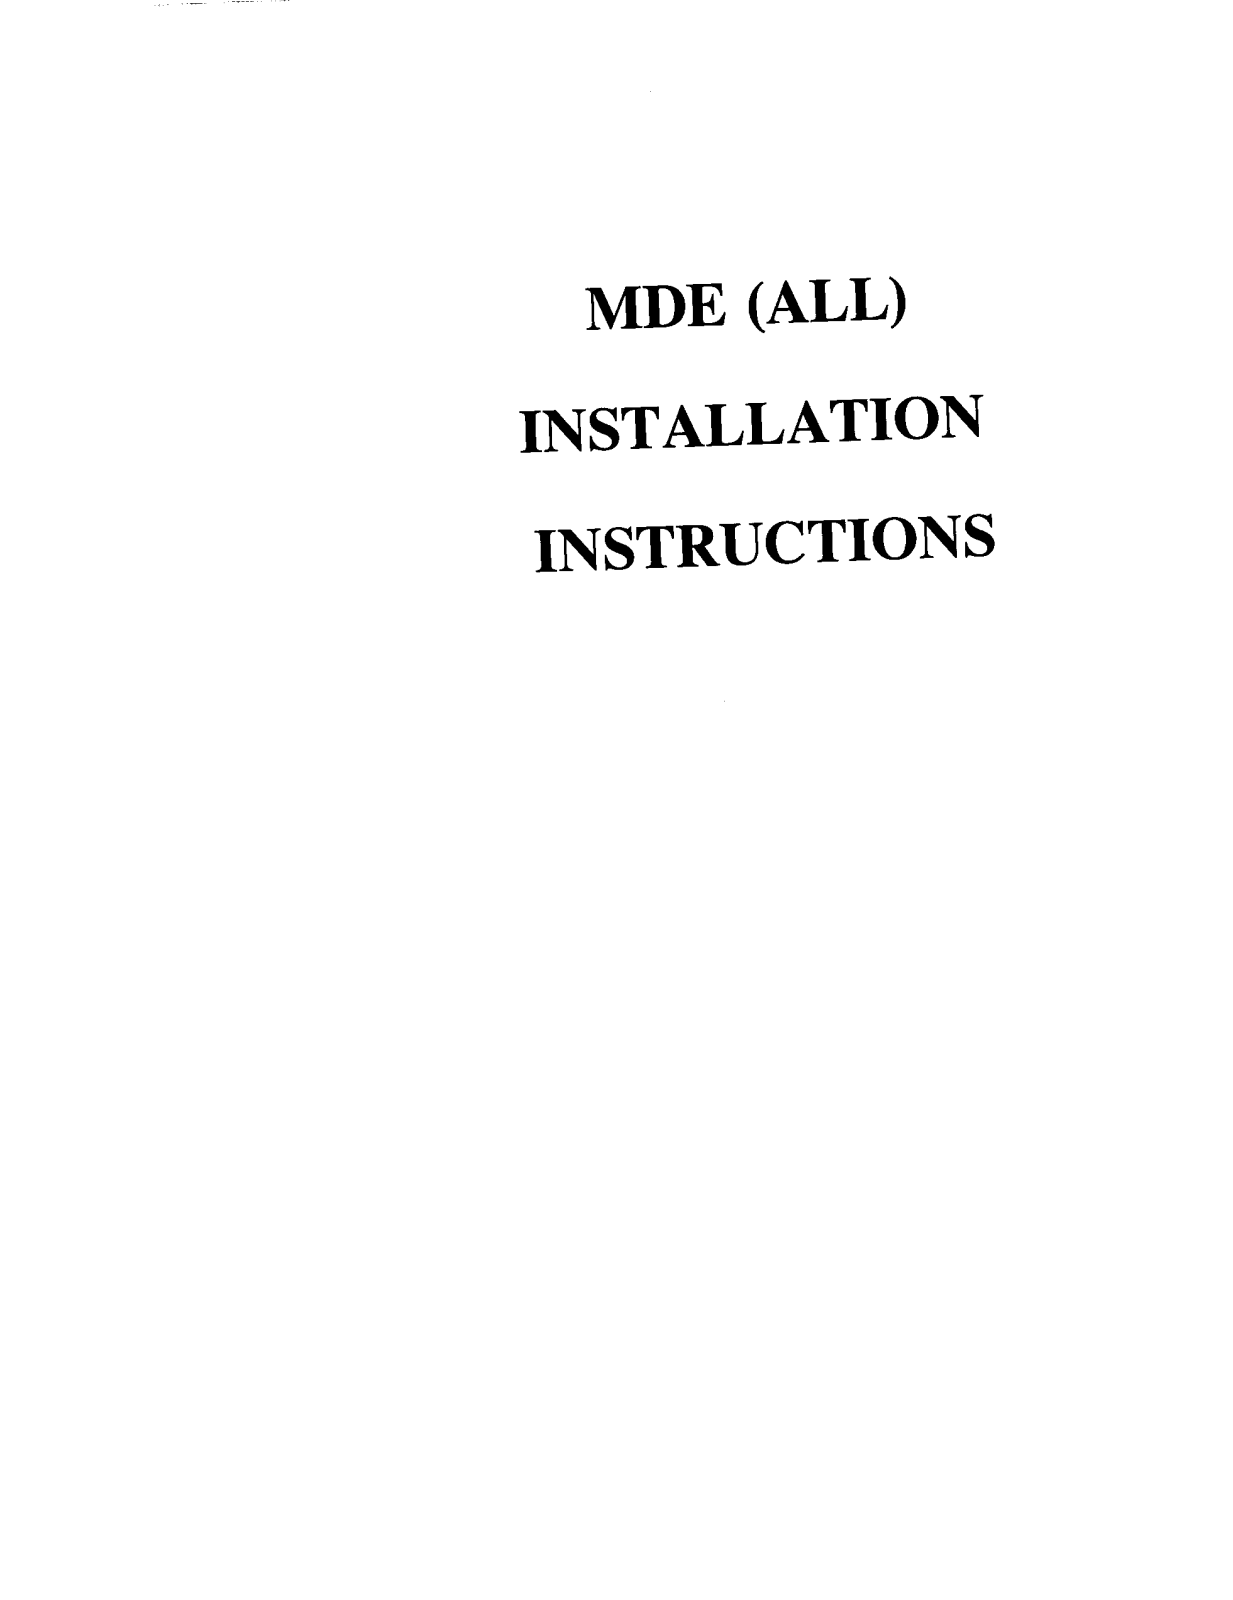 Maytag MDE9306AYQ, MDE9306AYA, MDE9306AUW, MDE9206AZW, MDE8757AYW Installation Instructions